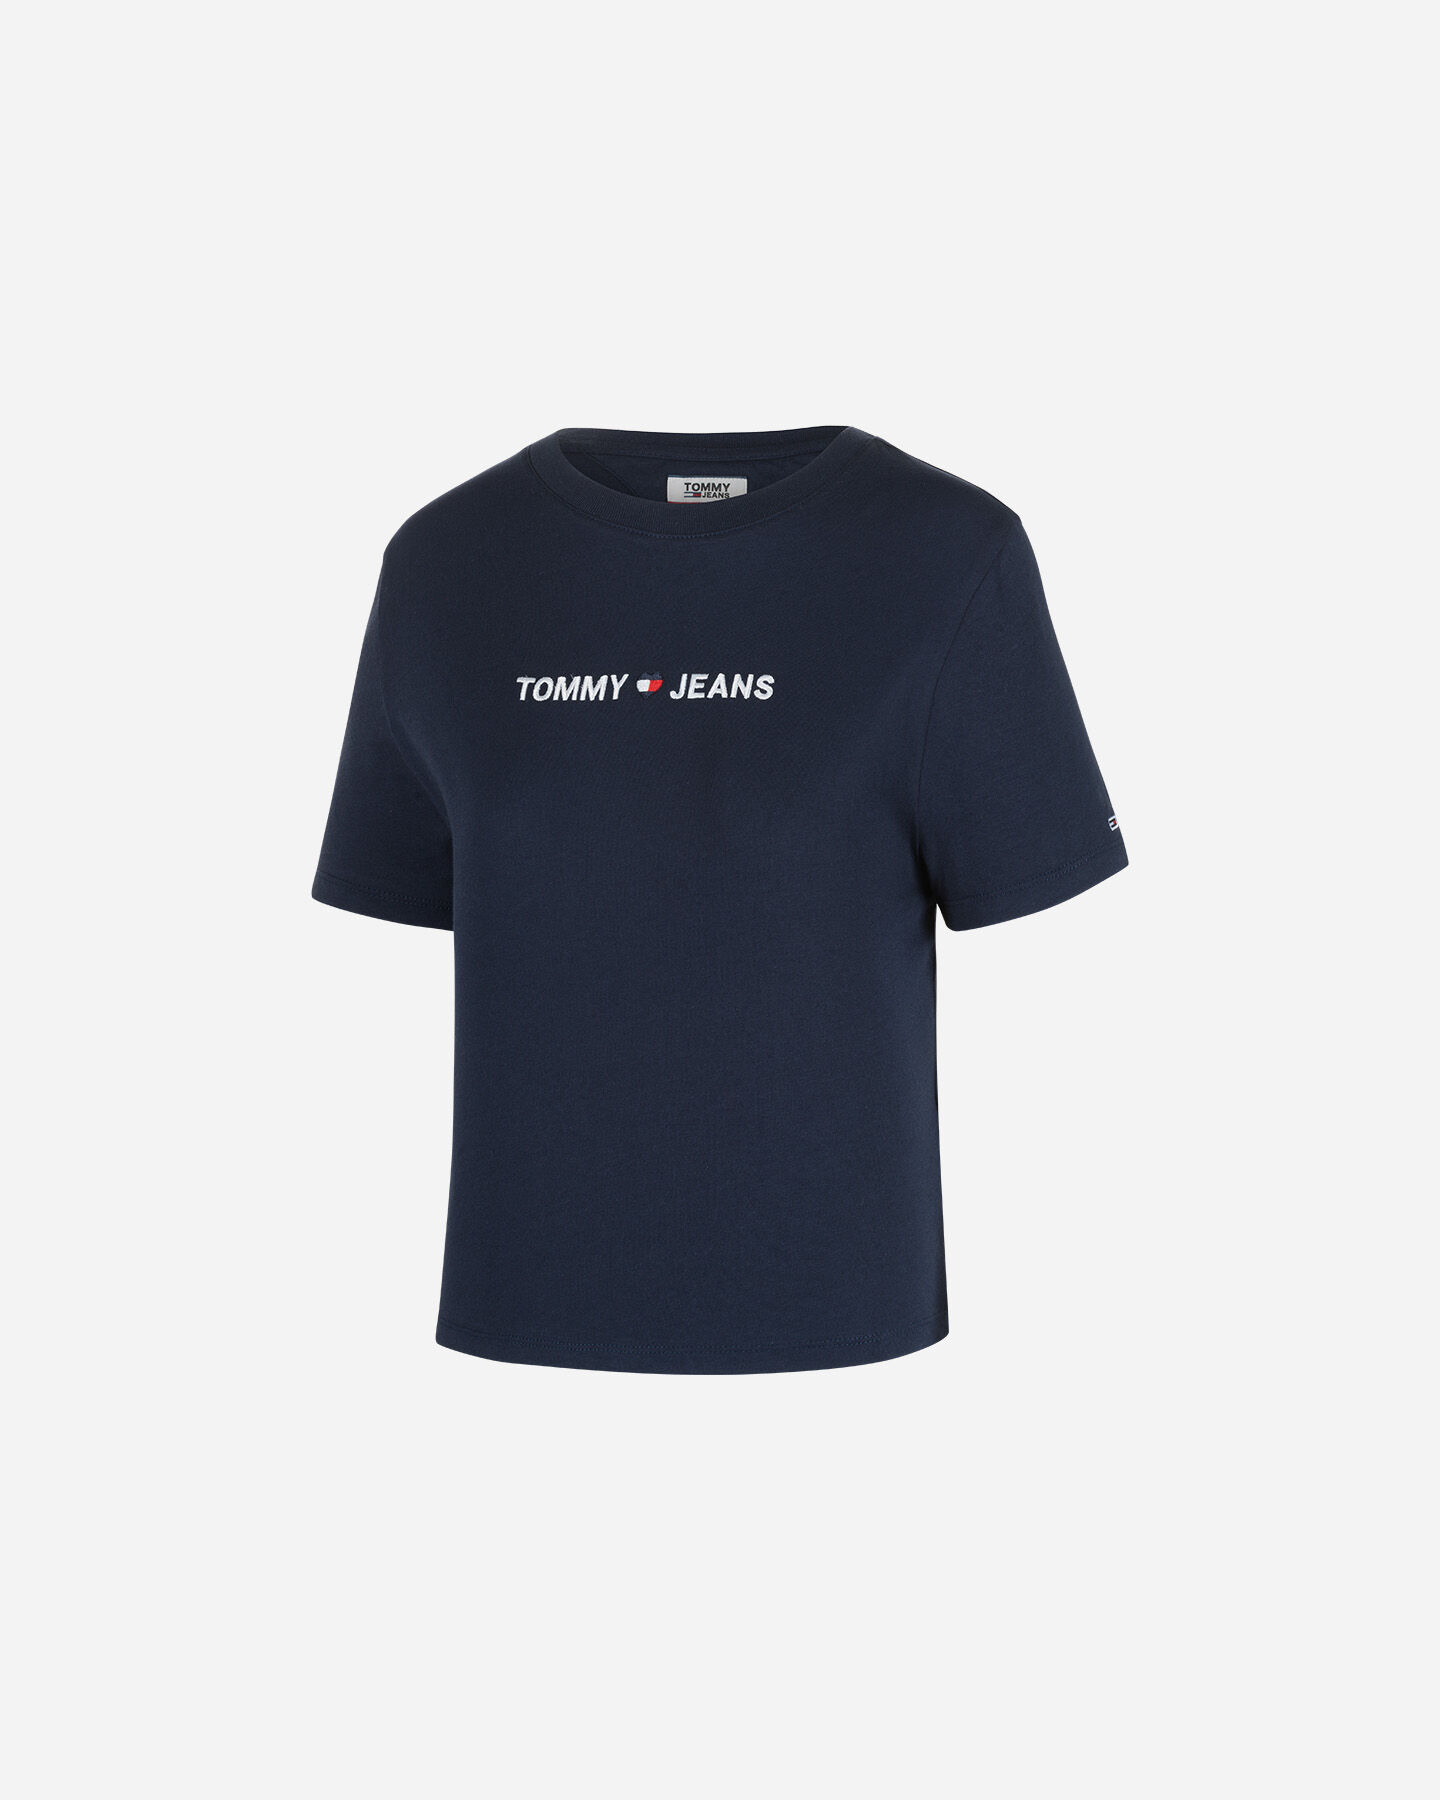  T-Shirt TOMMY HILFIGER CROP W S4073588|CBK|XS scatto 0